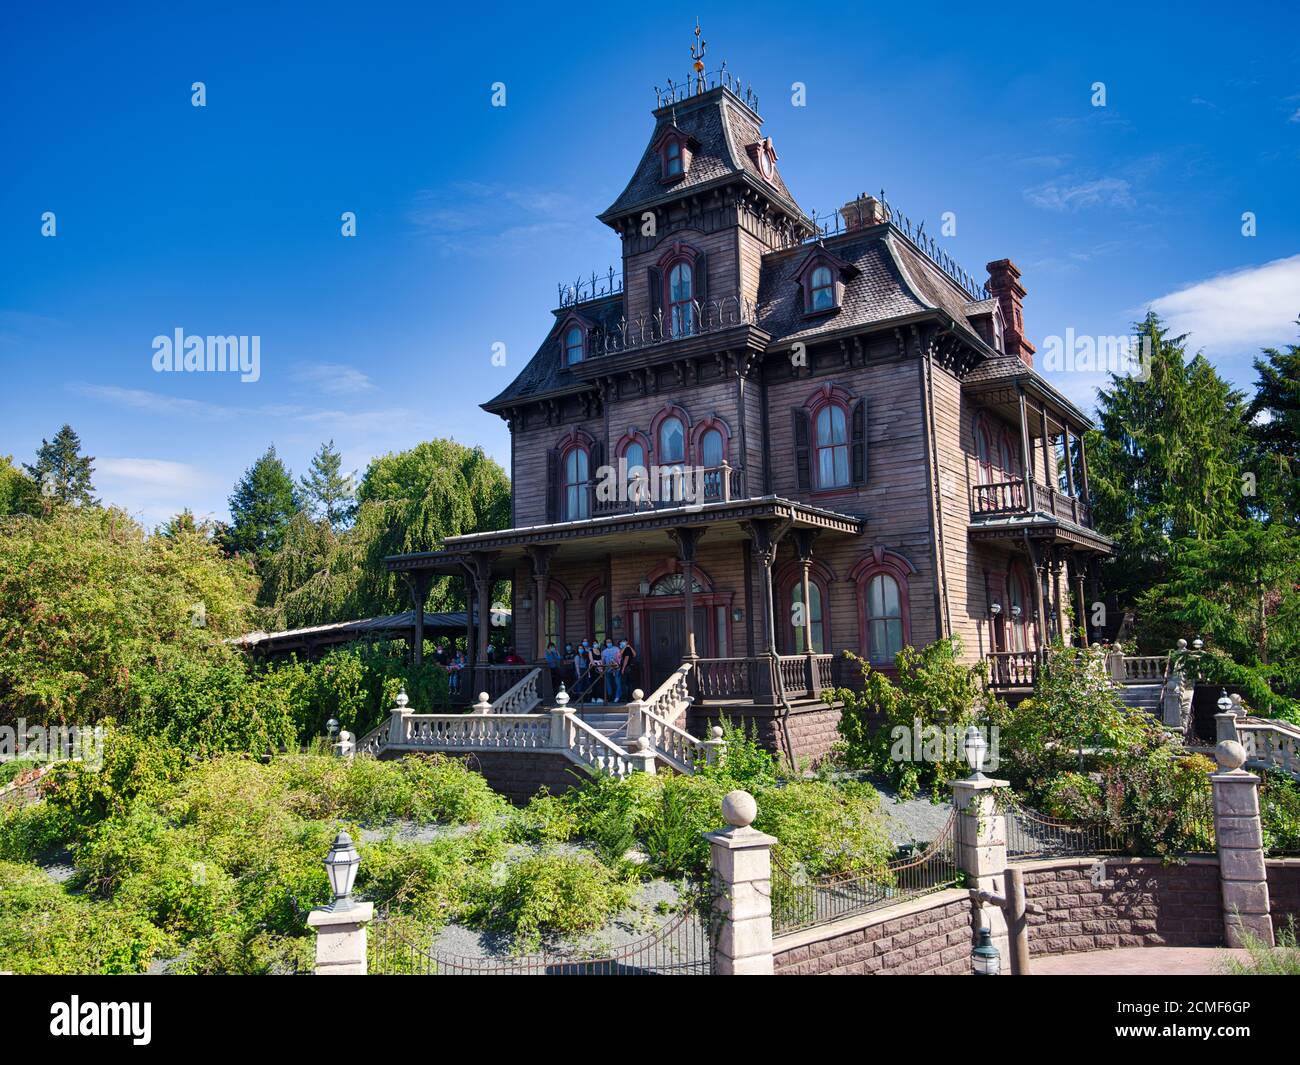 Phantom Manor, Disneyland Paris, Marne-la-Vallée, Paris, France, Europe Stock Photo